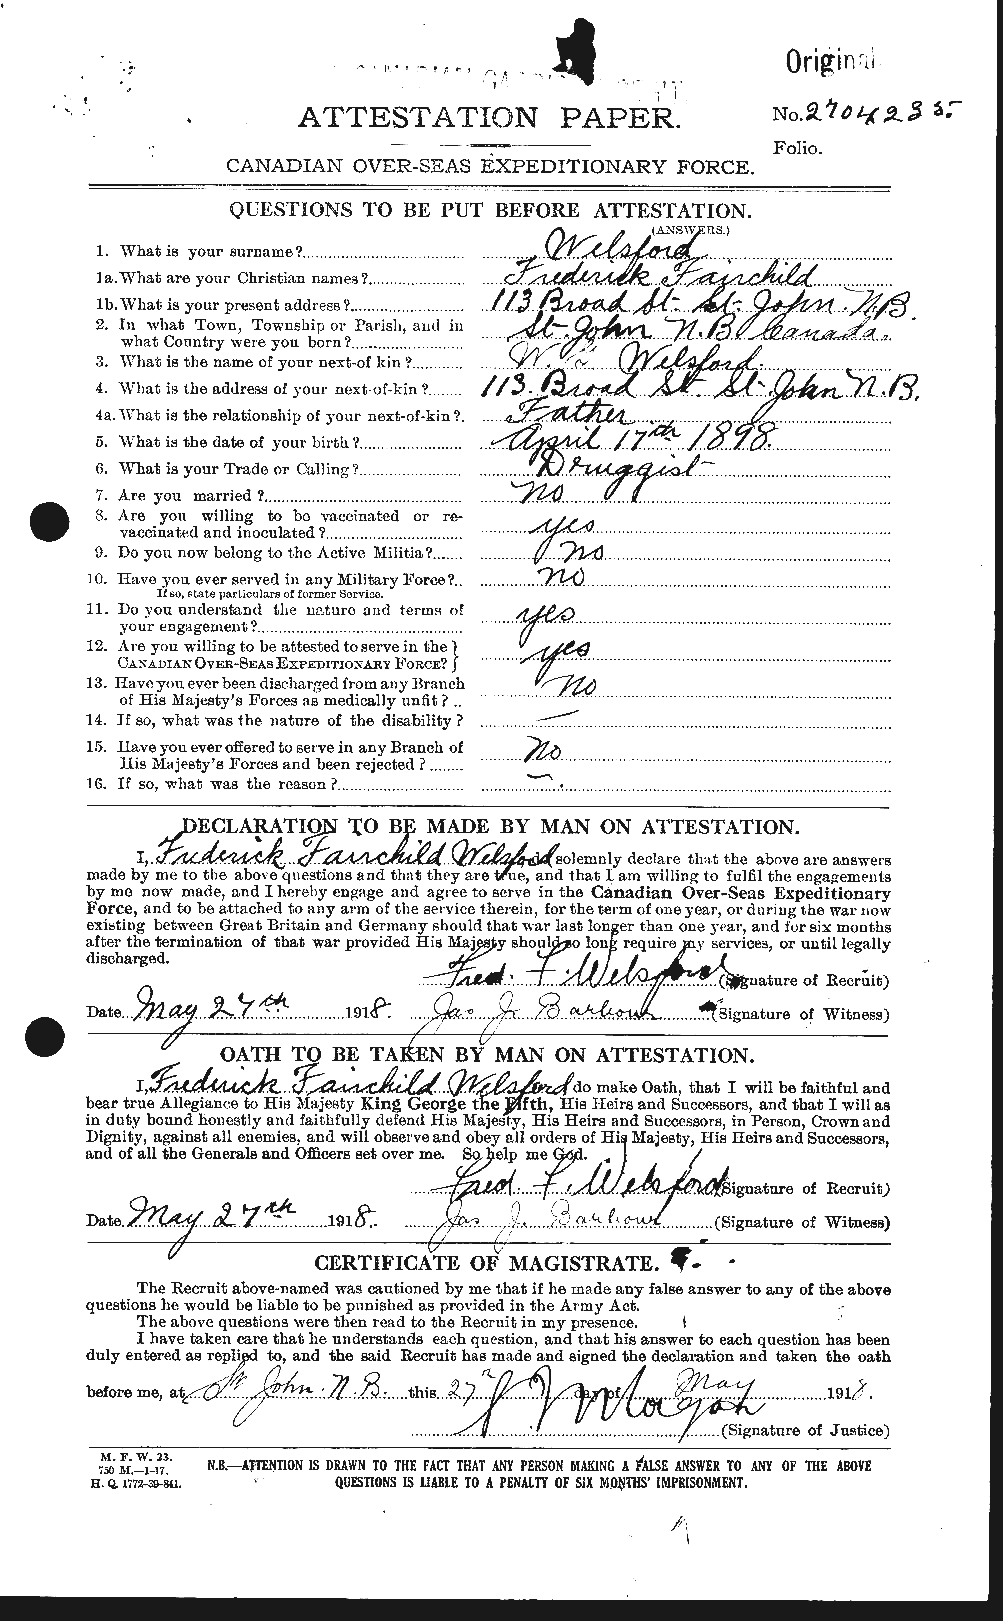 Dossiers du Personnel de la Première Guerre mondiale - CEC 665402a